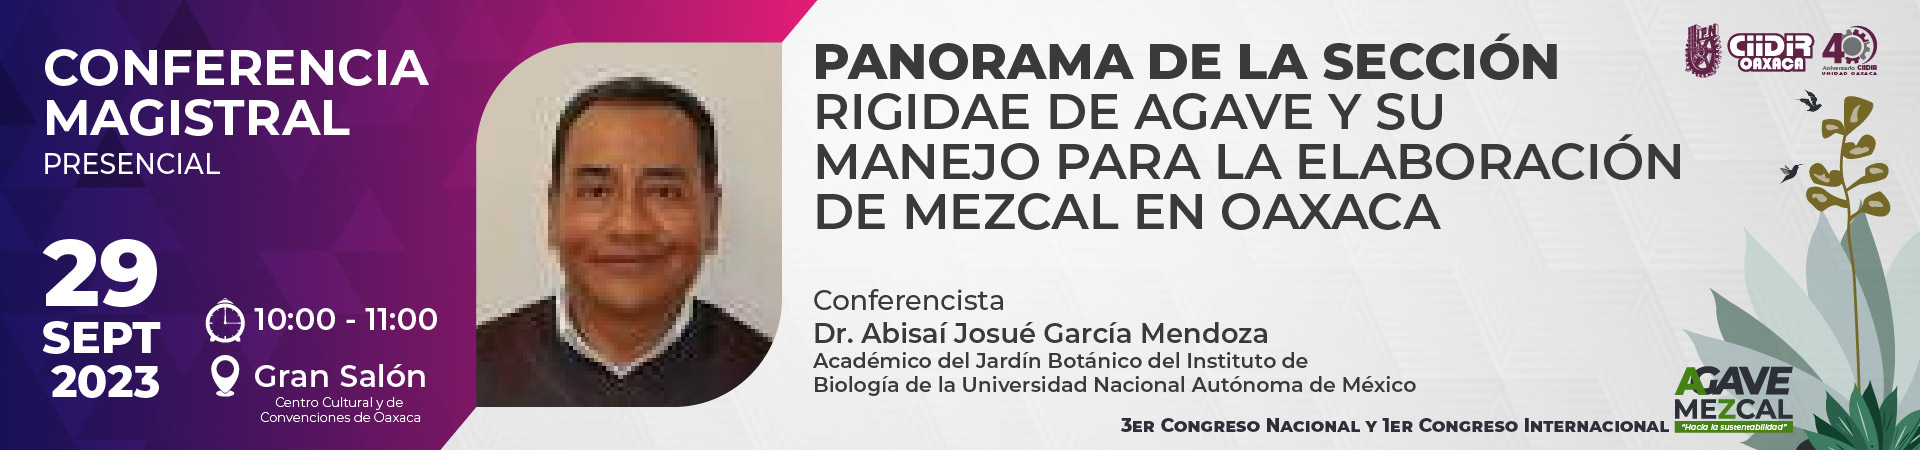 Conferencista Abisaí Josué García Mendoza - Panorama de la sección Rigidae de agave